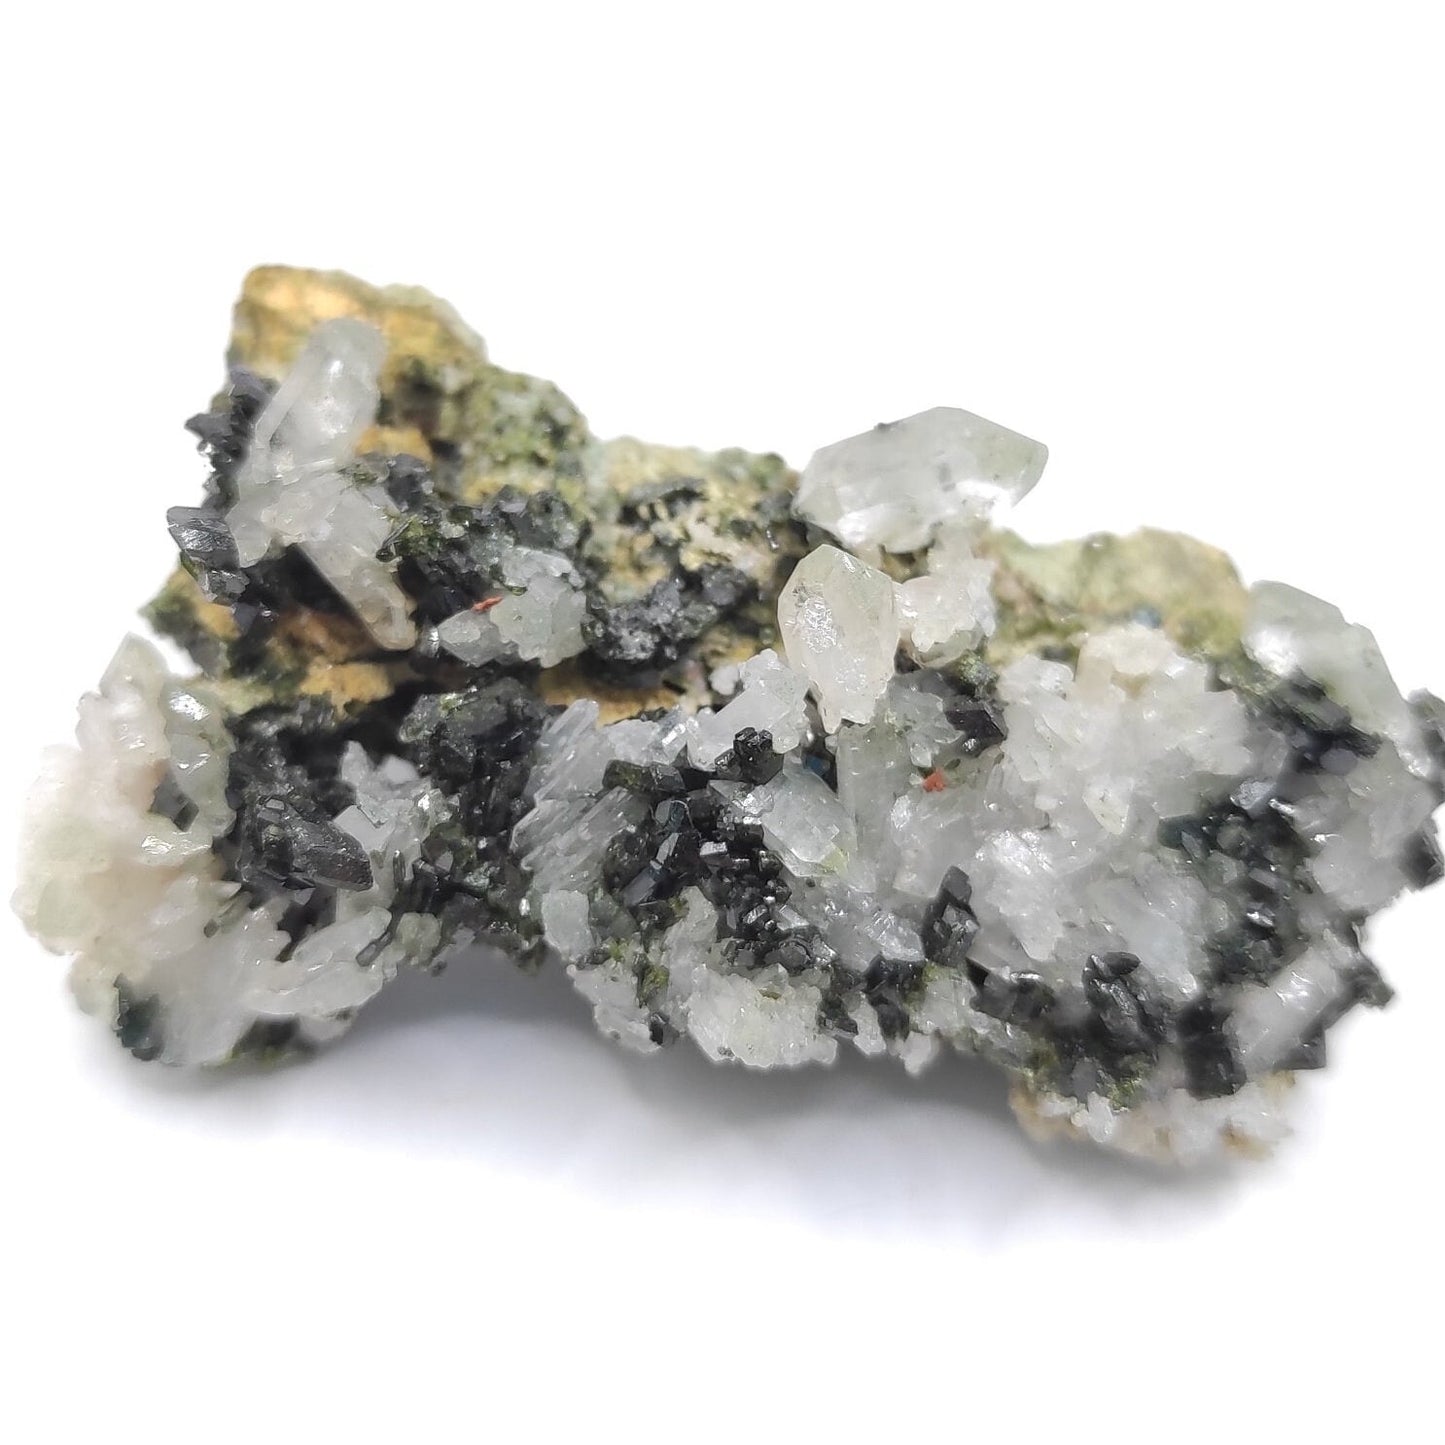 35g Sparkly Epidote & Forest Quartz - Hakkari, Turkey - Epidote with Clear Quartz - Forest Fairy Quartz - Natural Minerals - Rare Find